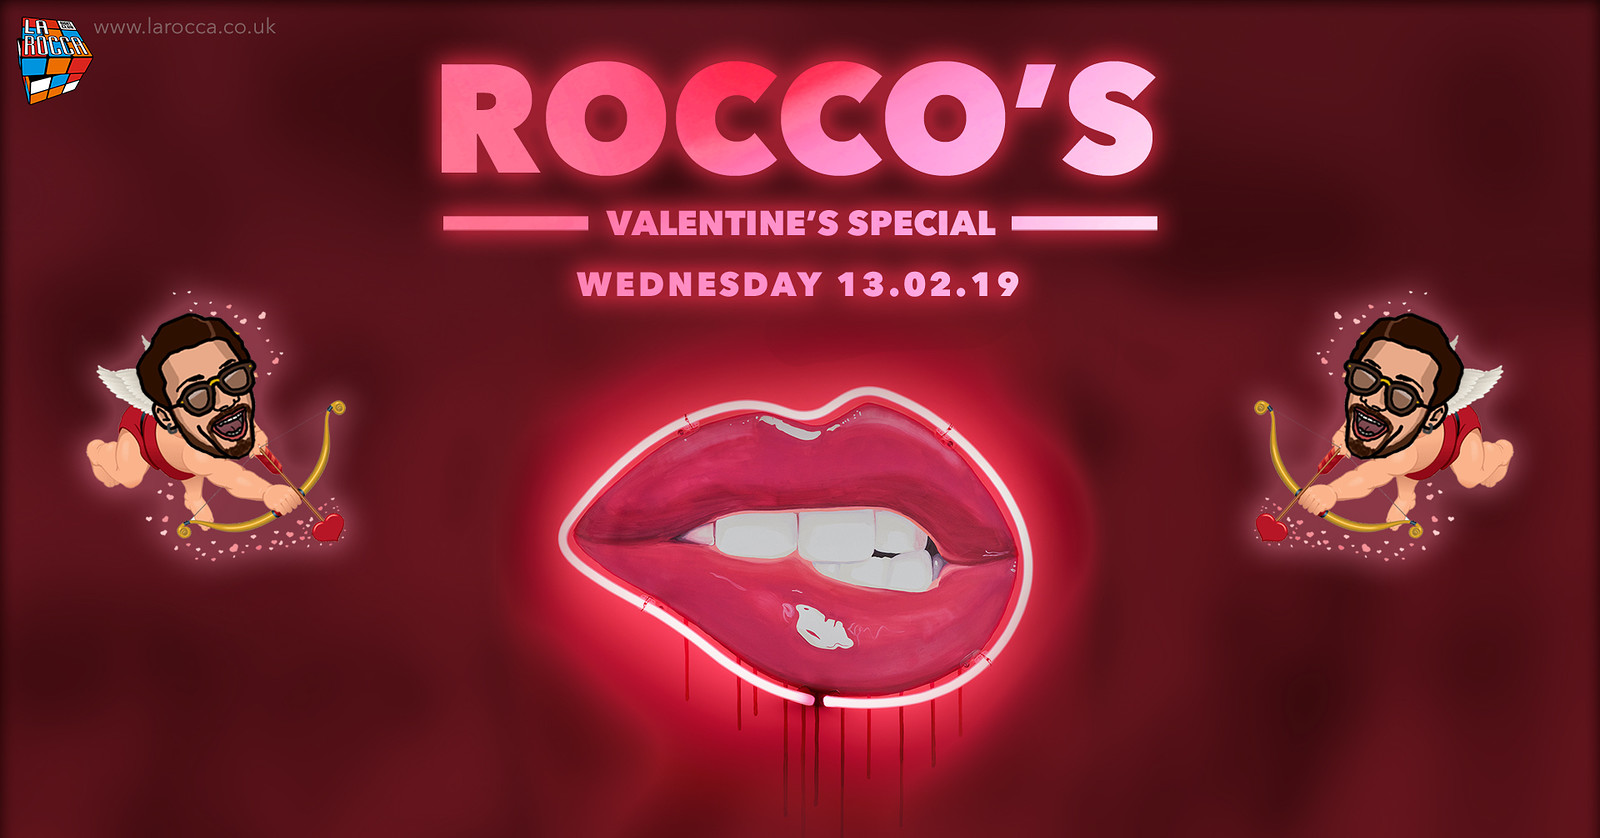 Rocco's: Valentine's Special at La Rocca